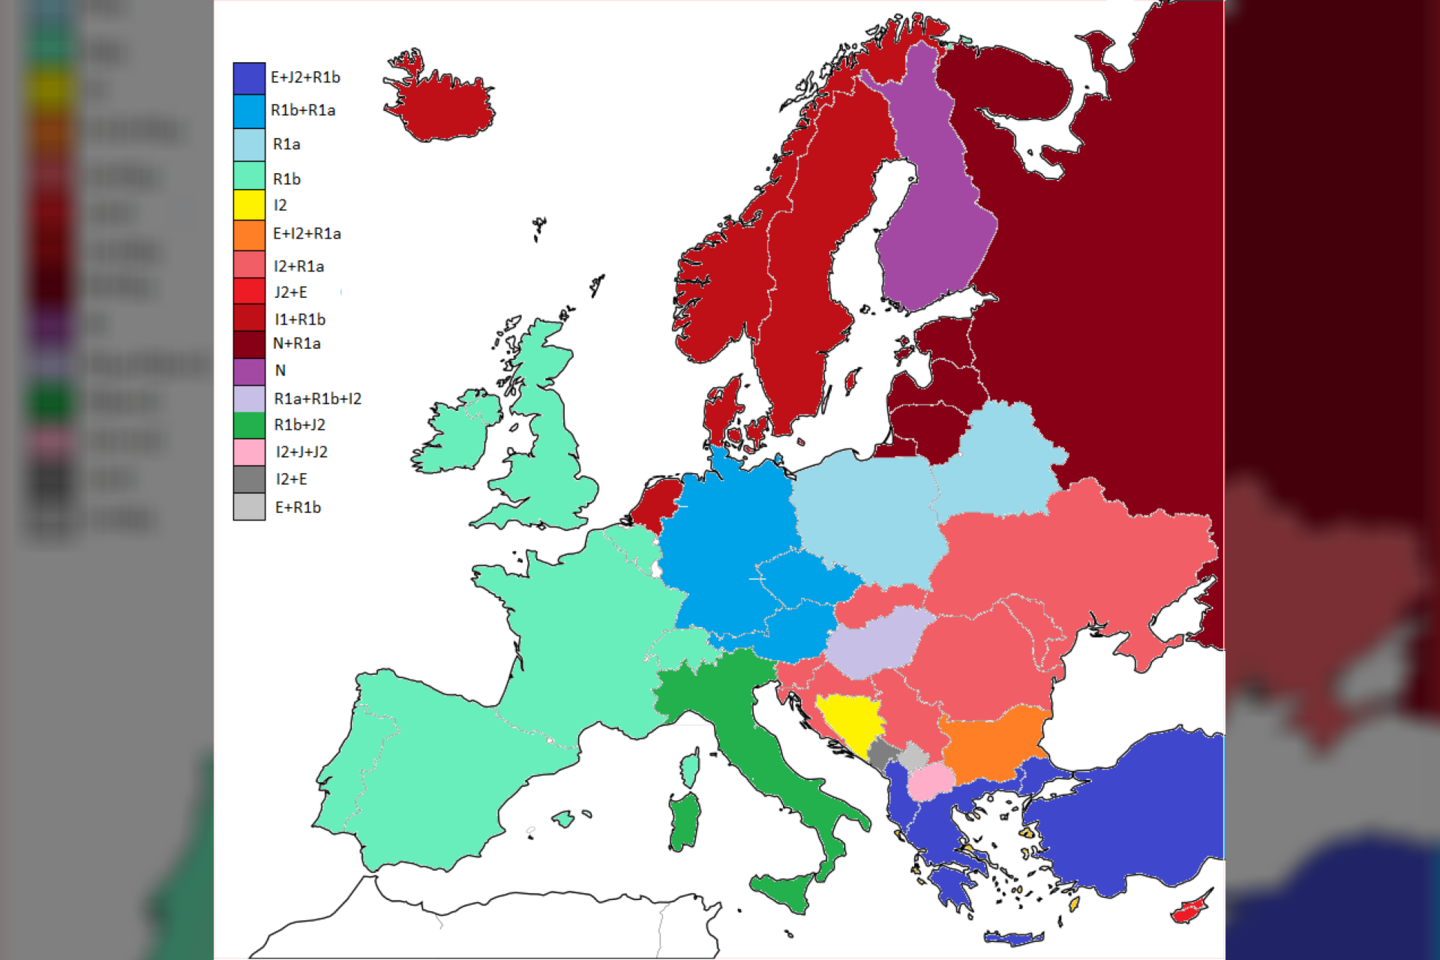  Europos žemėlapis, sudarytas pagal du dominuojančius haplotipus.<br>Iliustr. iš Imgur.com/a/WQKLQ